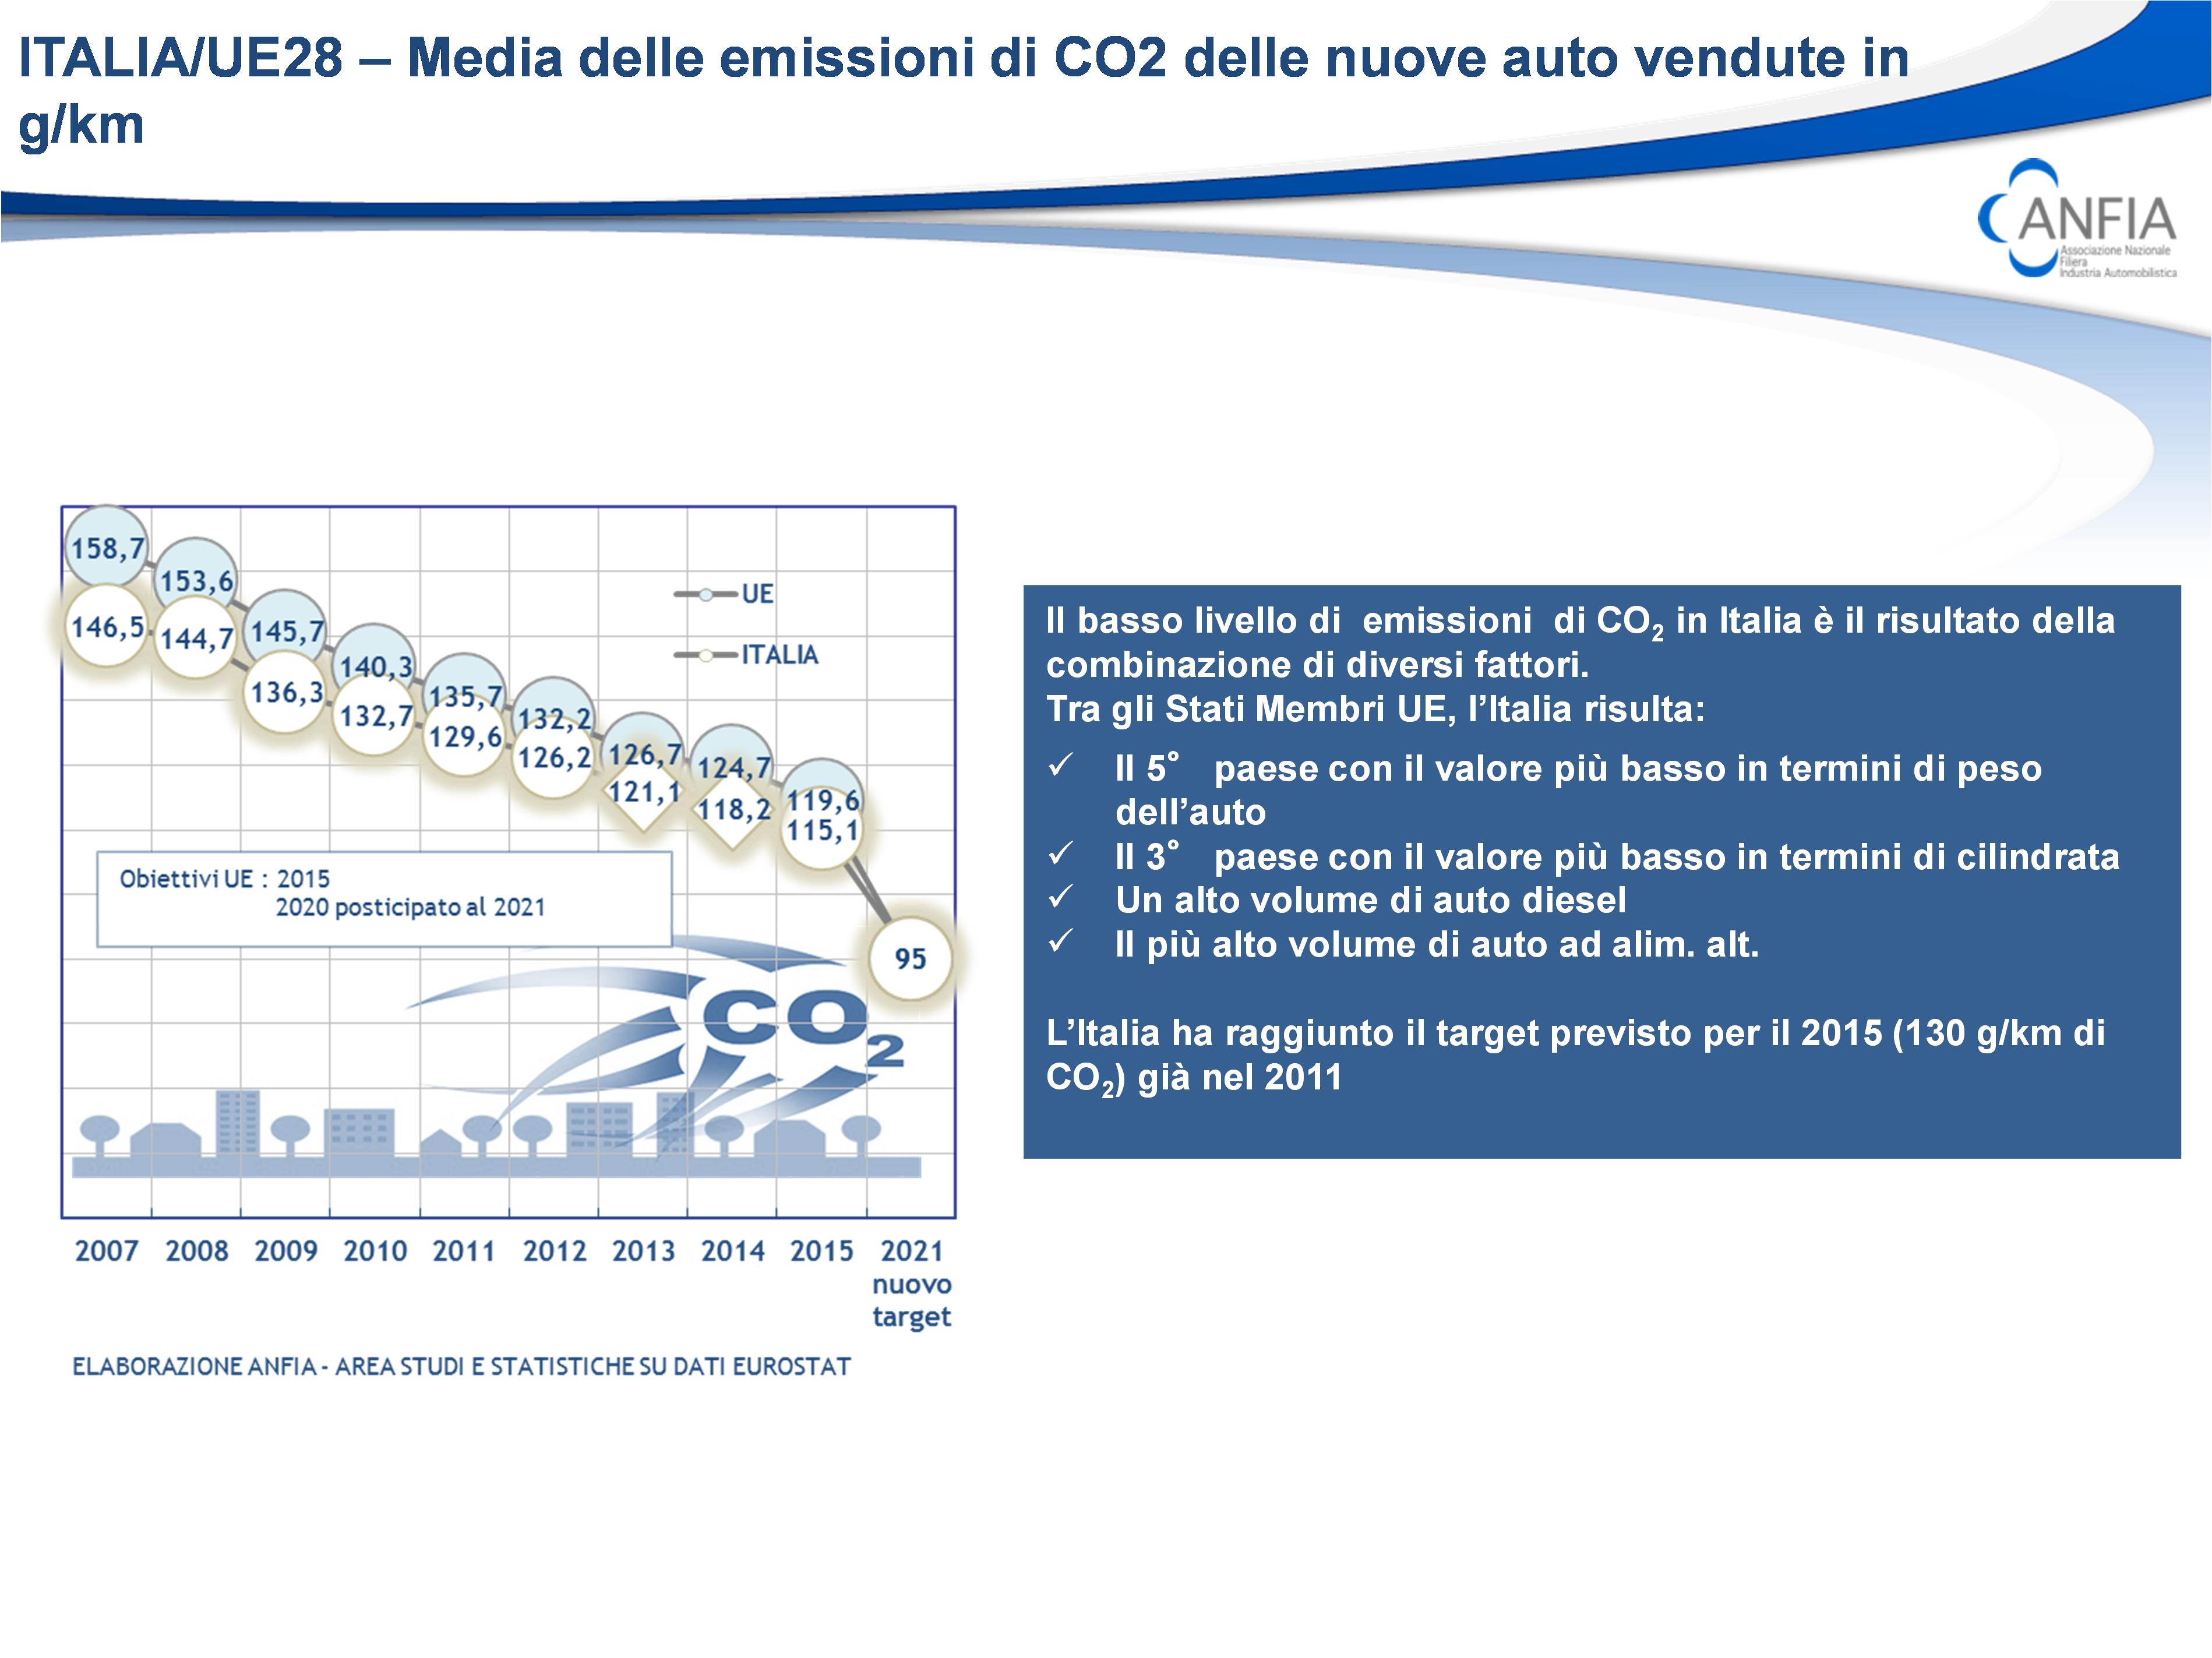 che pesa maggiormente. Ben il 31% di tutte le auto cosiddette ecofriendly immatricolate in UE- Efta sono italiane seguite da UK (13,6%), da Francia (12,5%), Norvegia (8,9%) e Germania (8,3%).